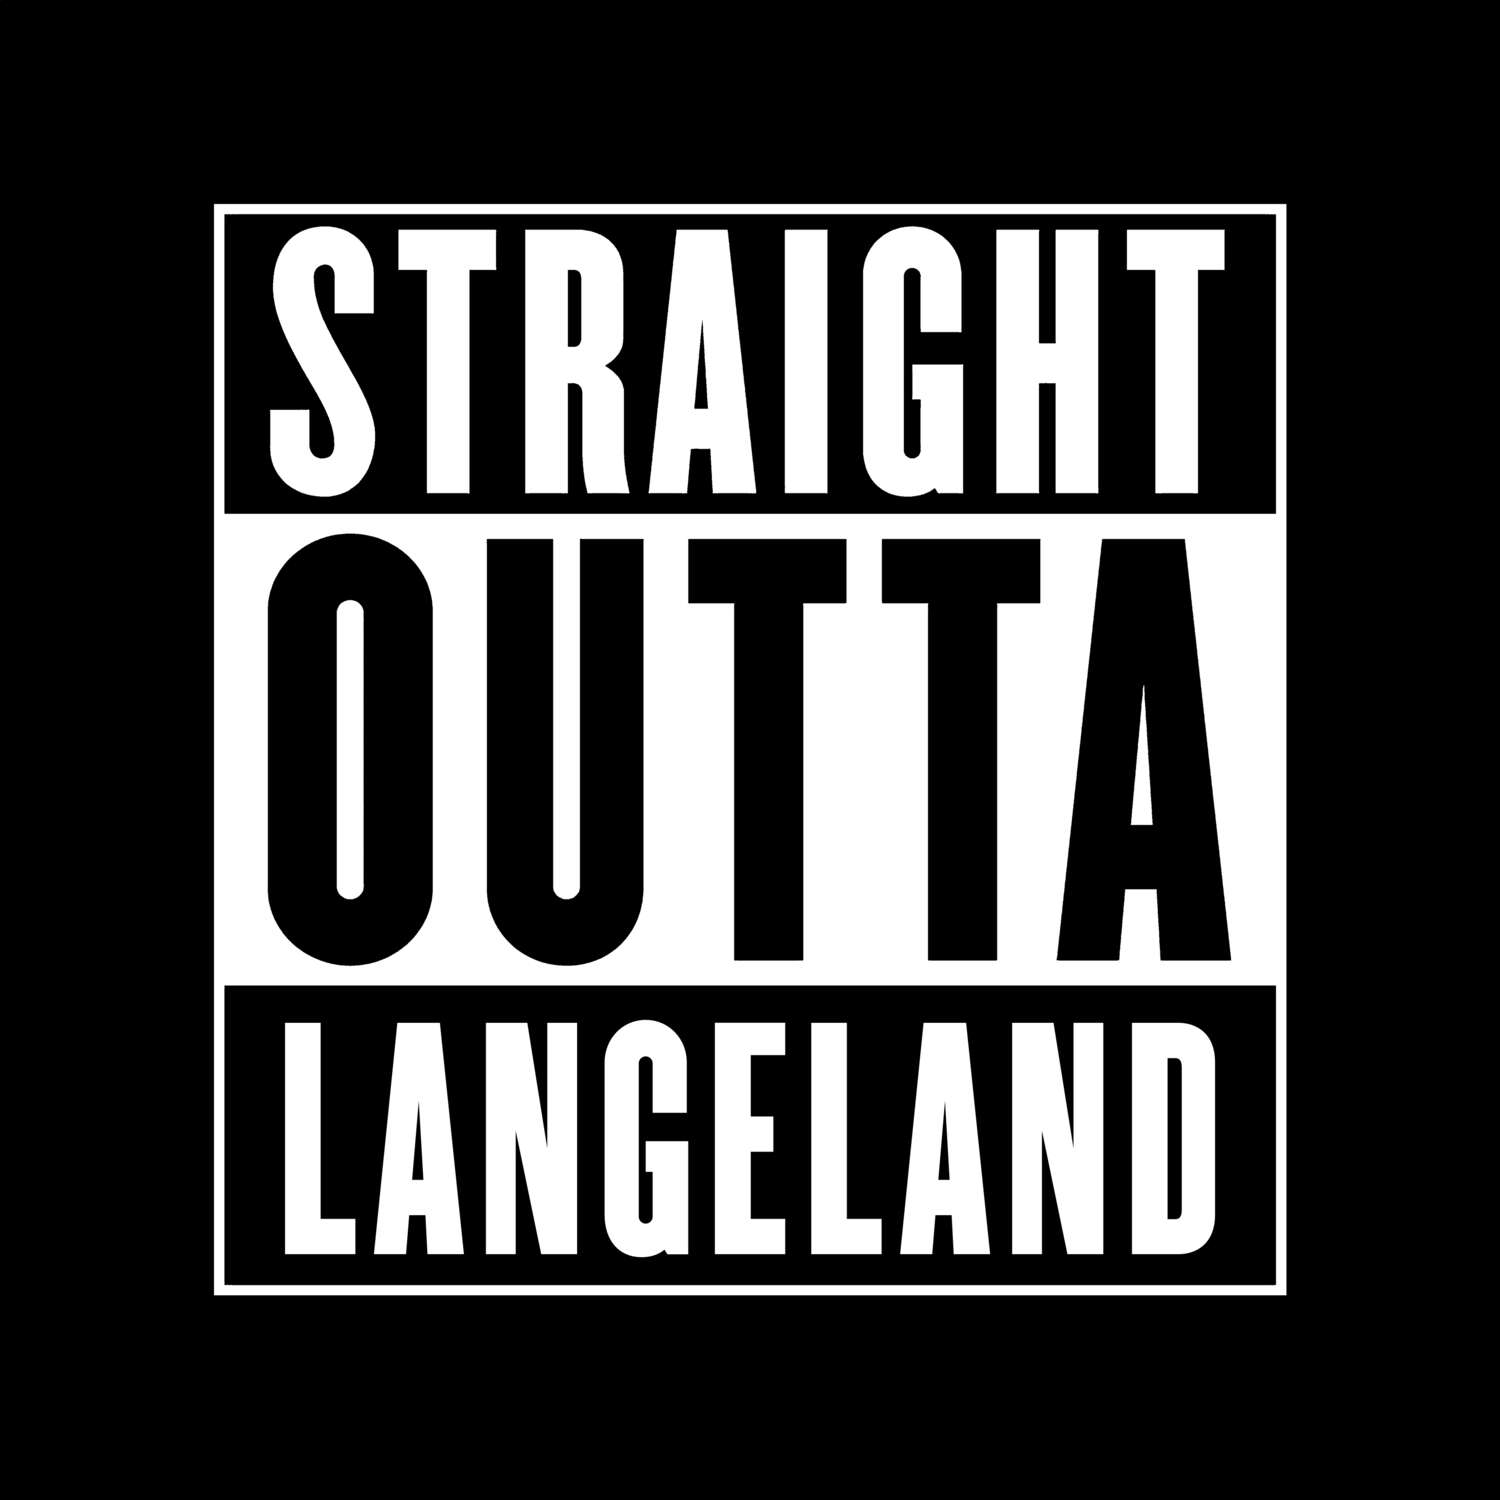 Langeland T-Shirt »Straight Outta«